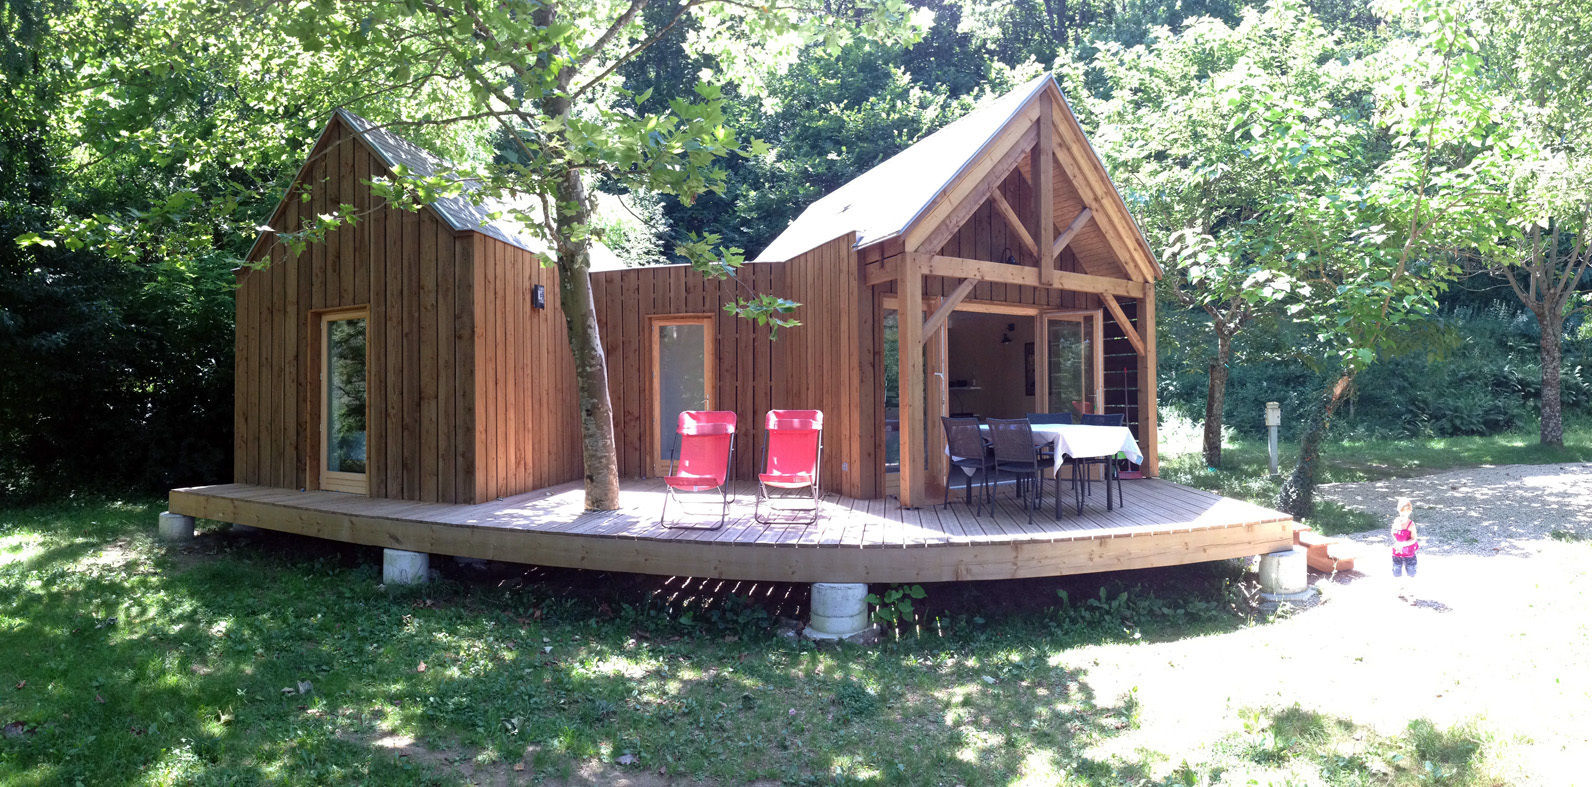 Habitat de loisir en bois - camping les Clots mirandol - bourgnounac, ...architectes ...architectes Commercial spaces Hotels